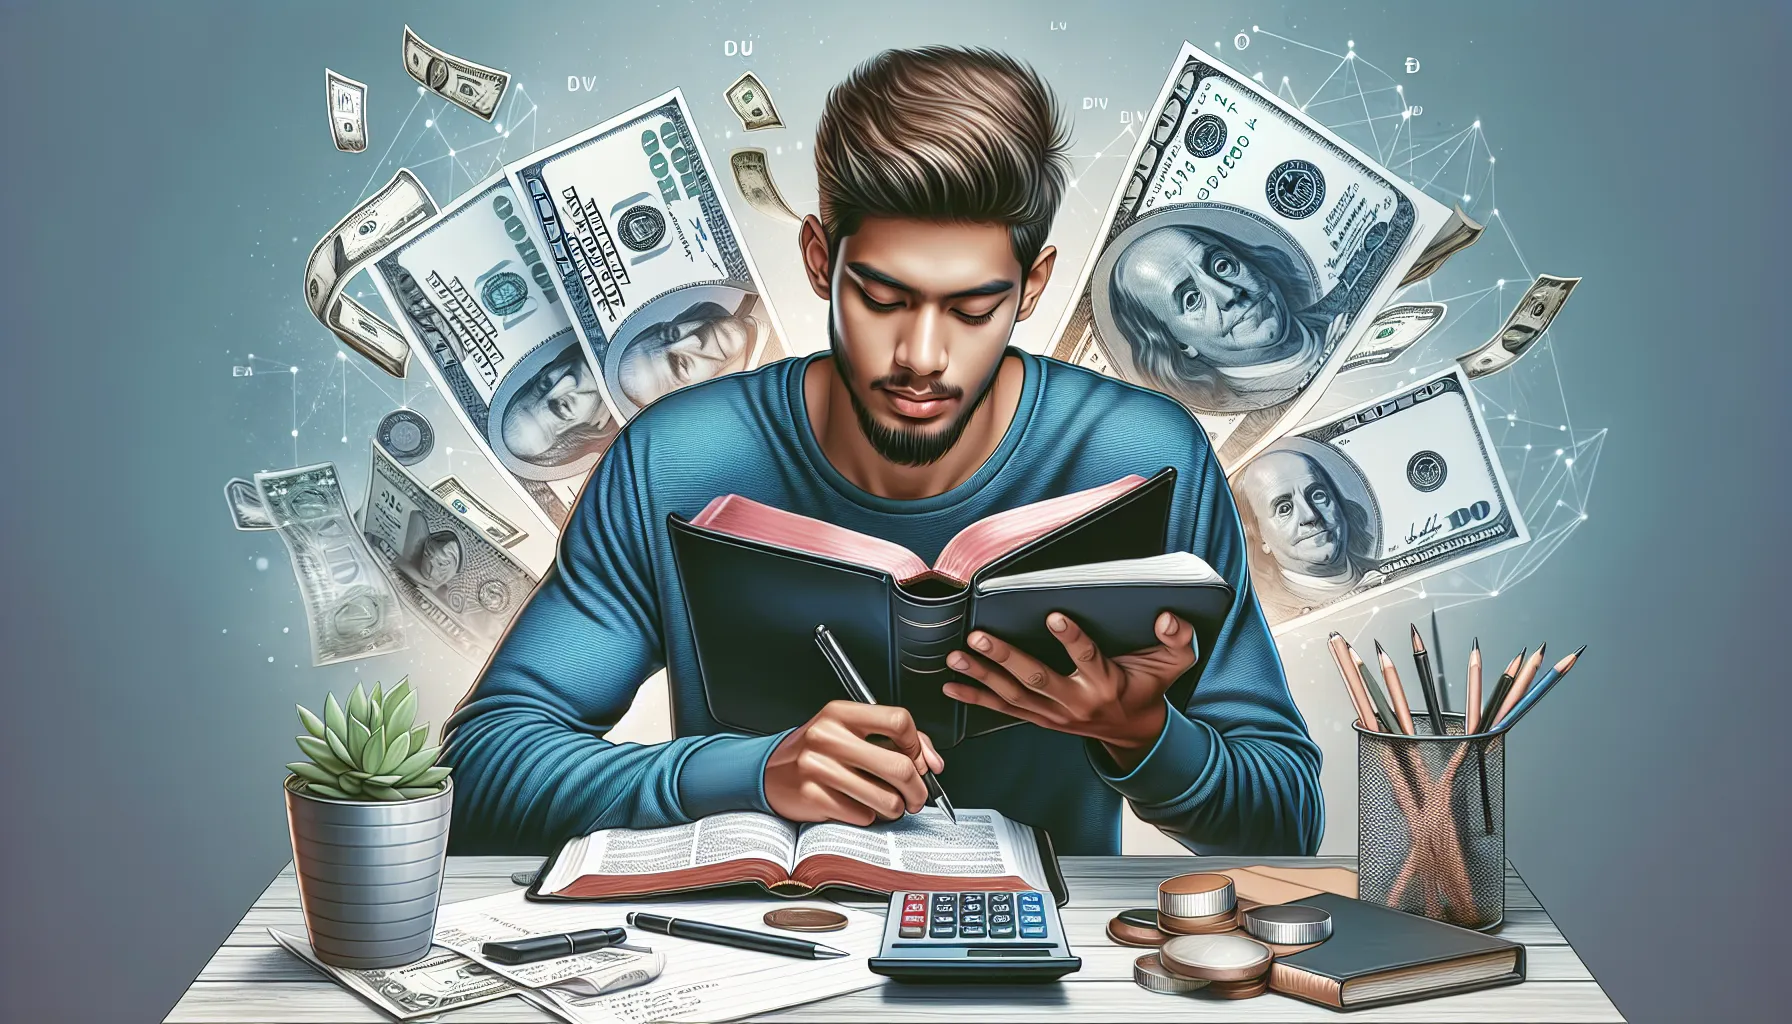 Ilustración de una persona leyendo la Biblia y anotando en una libreta con calculadora y billetes alrededor